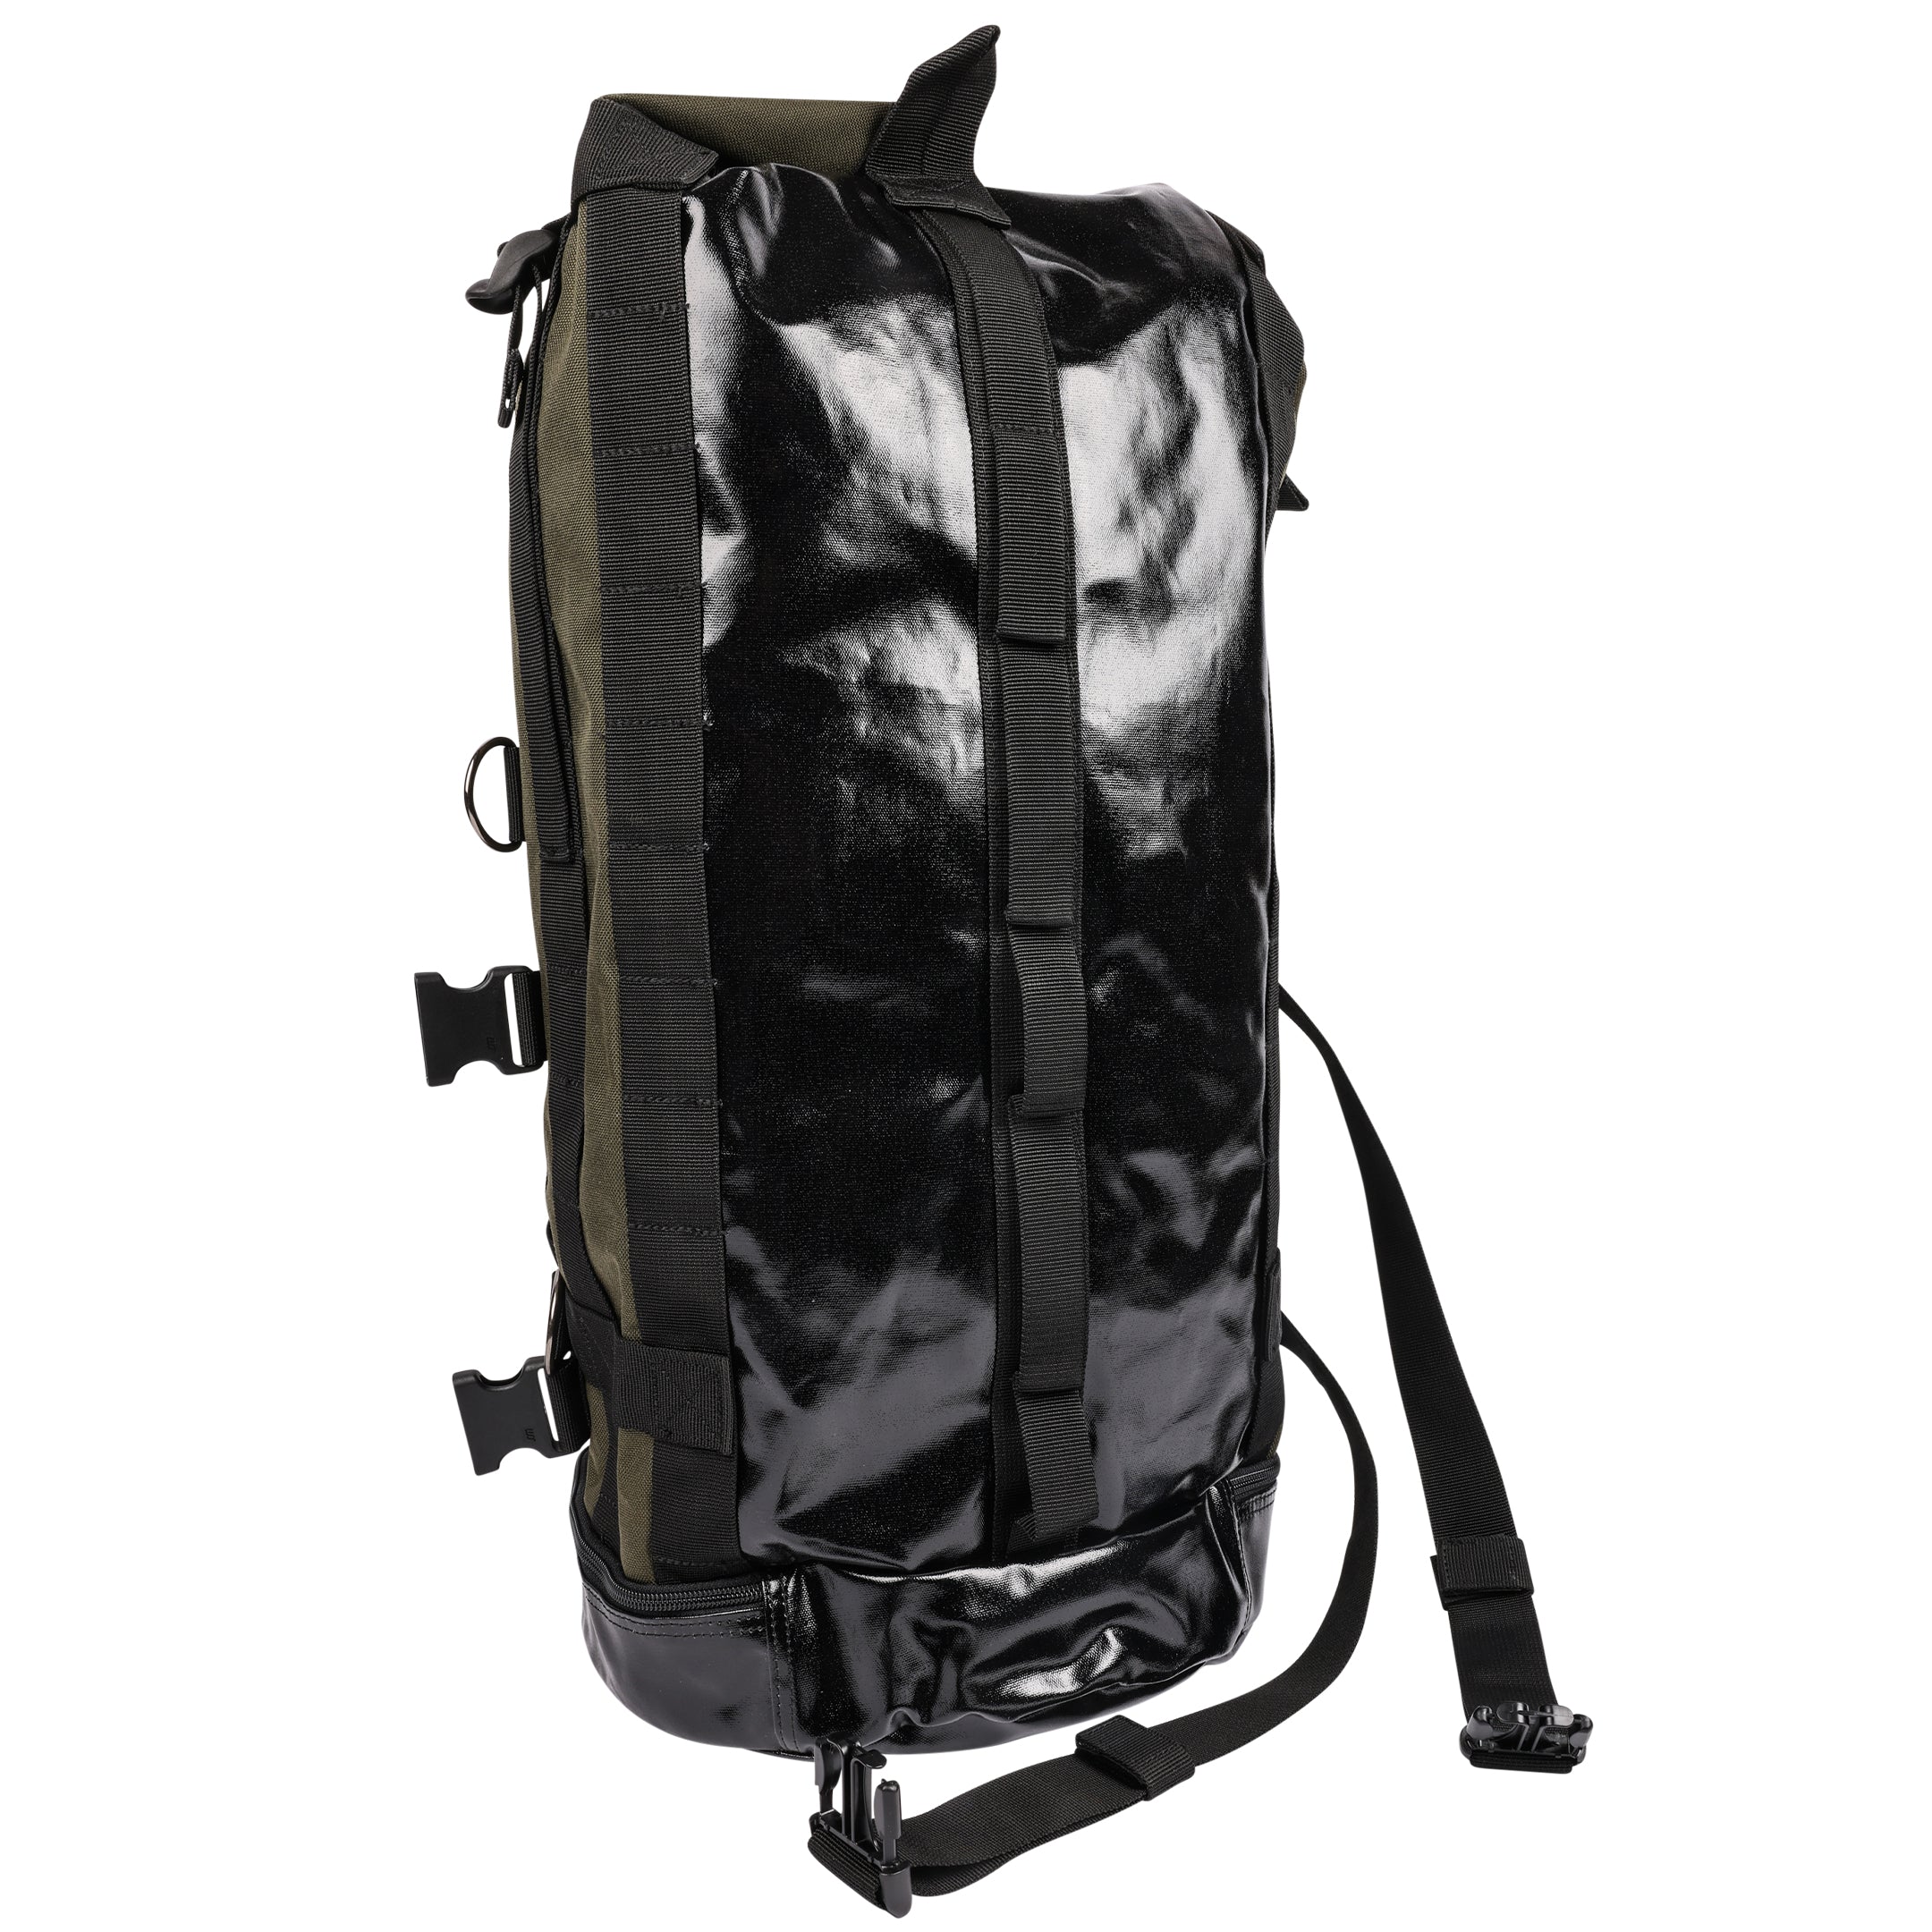 Mission Duffle Bag - Black – Thrashin Supply